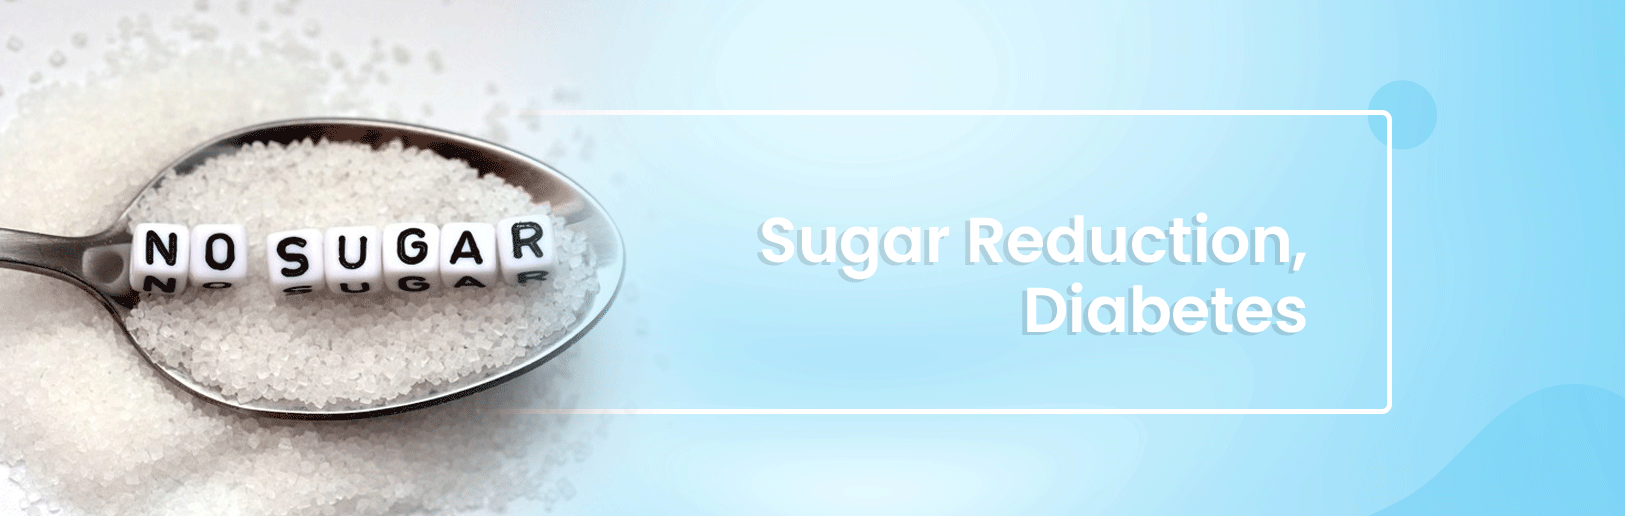 อาหารเสริม สำหรับช่วยควบคุมน้ำตาล ลดโอกาสการเป็นเบาหวาน